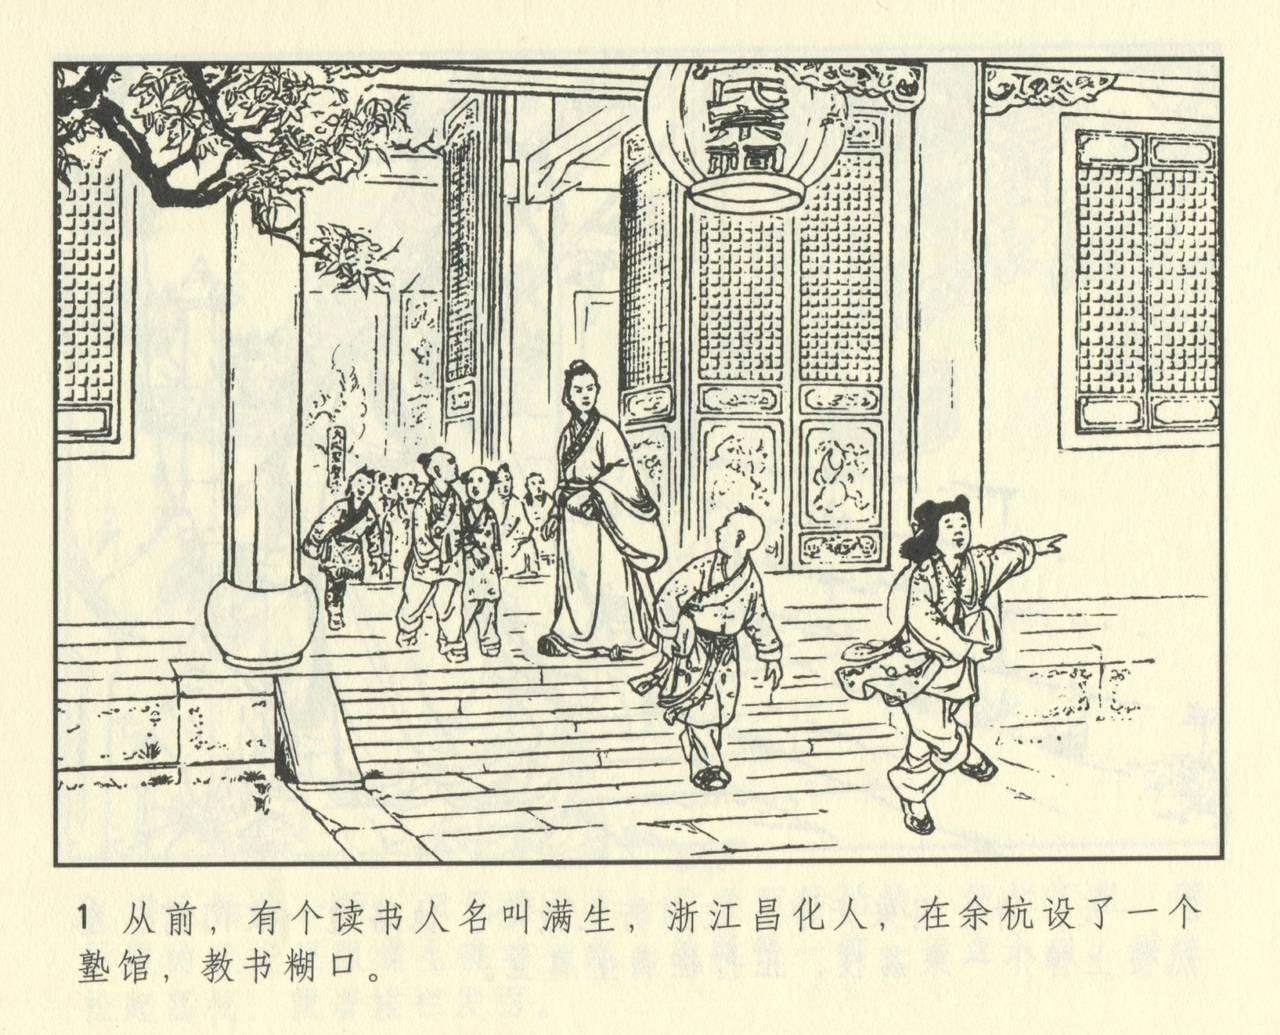 聊斋志异 张玮等绘 天津人民美术出版社 卷二十一 ~ 三十 412